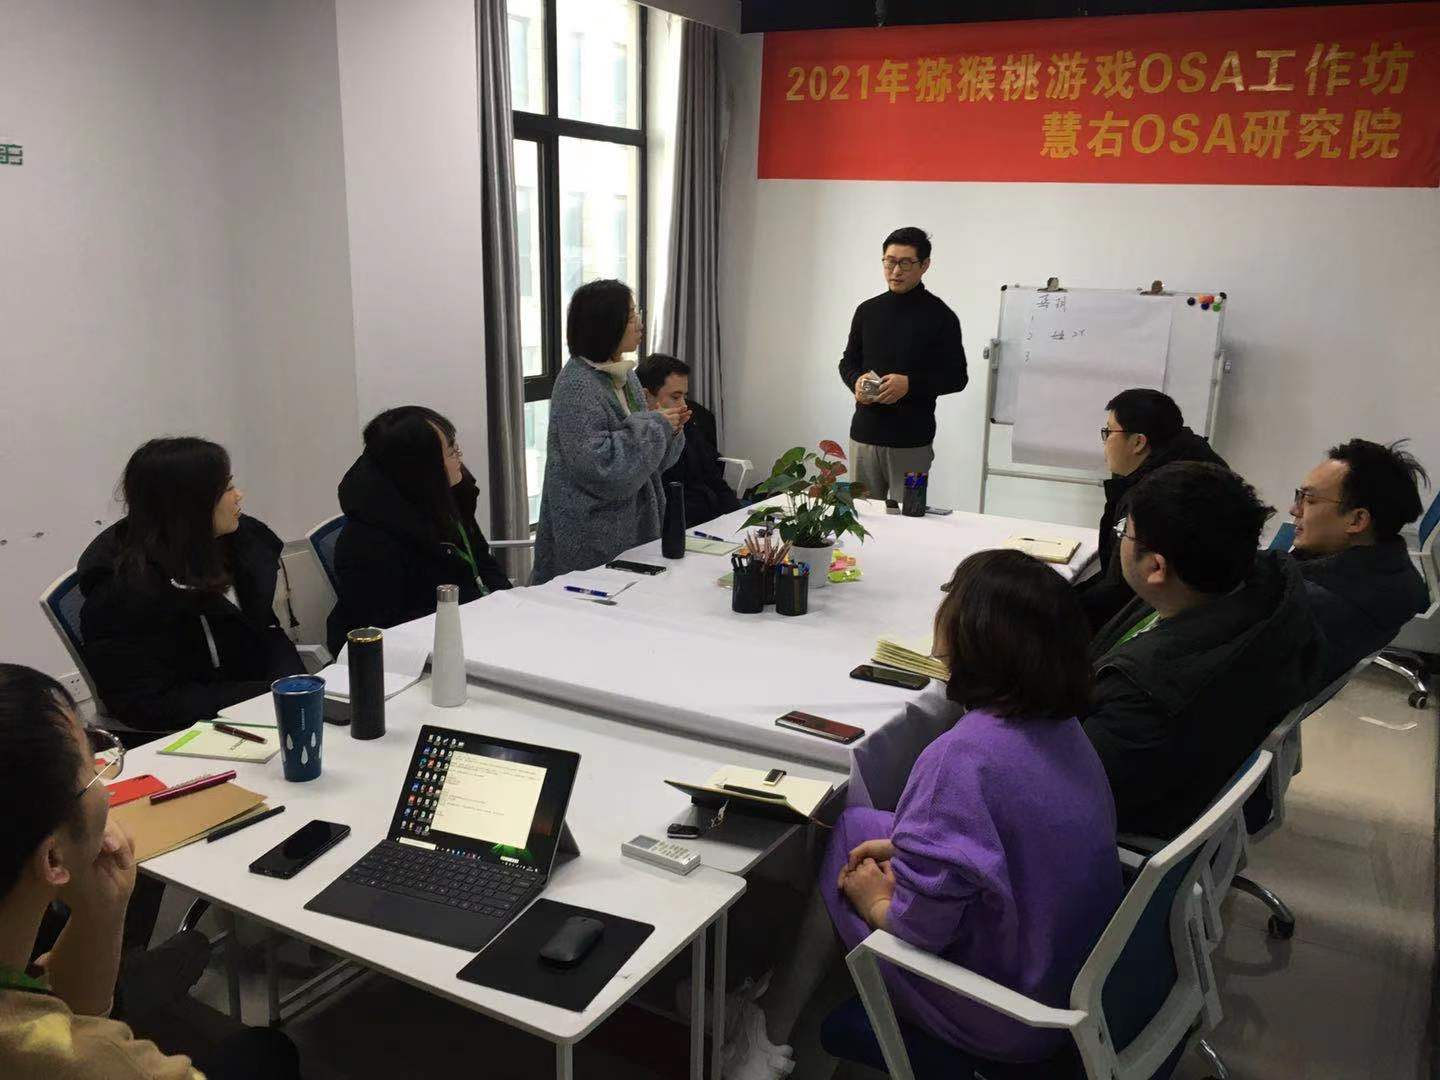 上海慧右 OSA工作法 OSA工作坊 业绩增长 绩效考核 从团伙到团队 团队考评 领导力 上飞轮 识人用人留人 绩效能力 身脑心模型 策略 目标